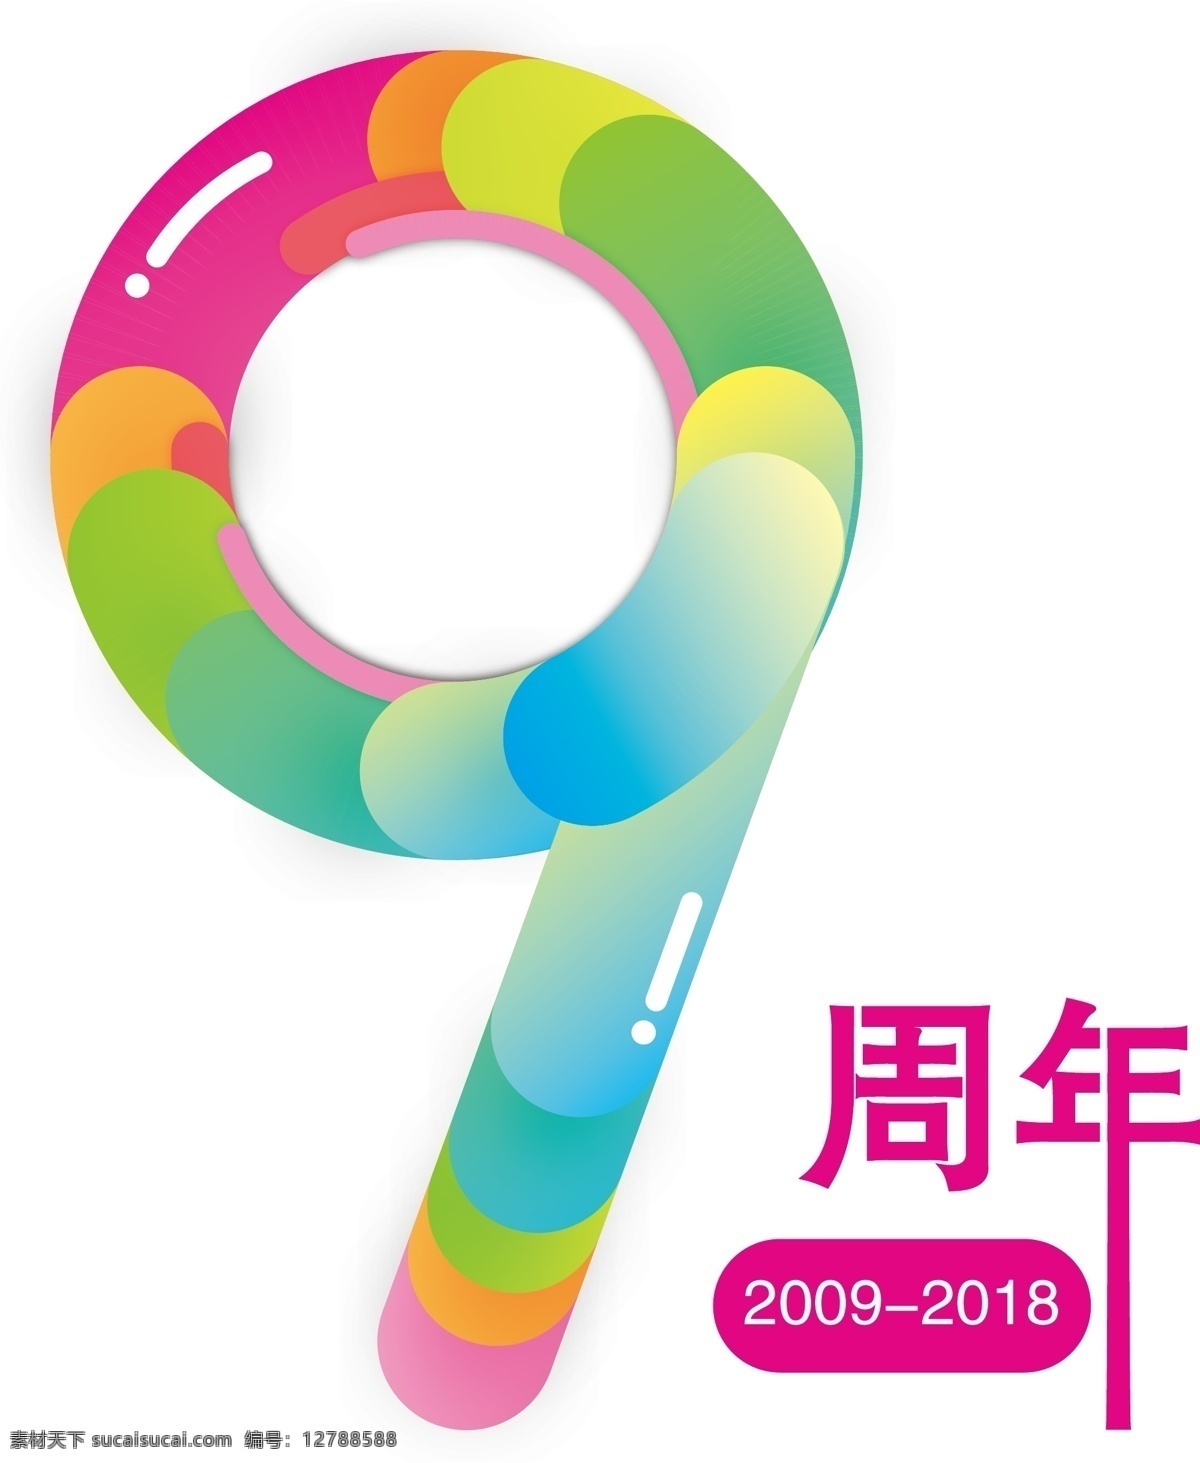 9周年 周年 炫彩 彩色 新颖 立体 多彩 数字 logo设计